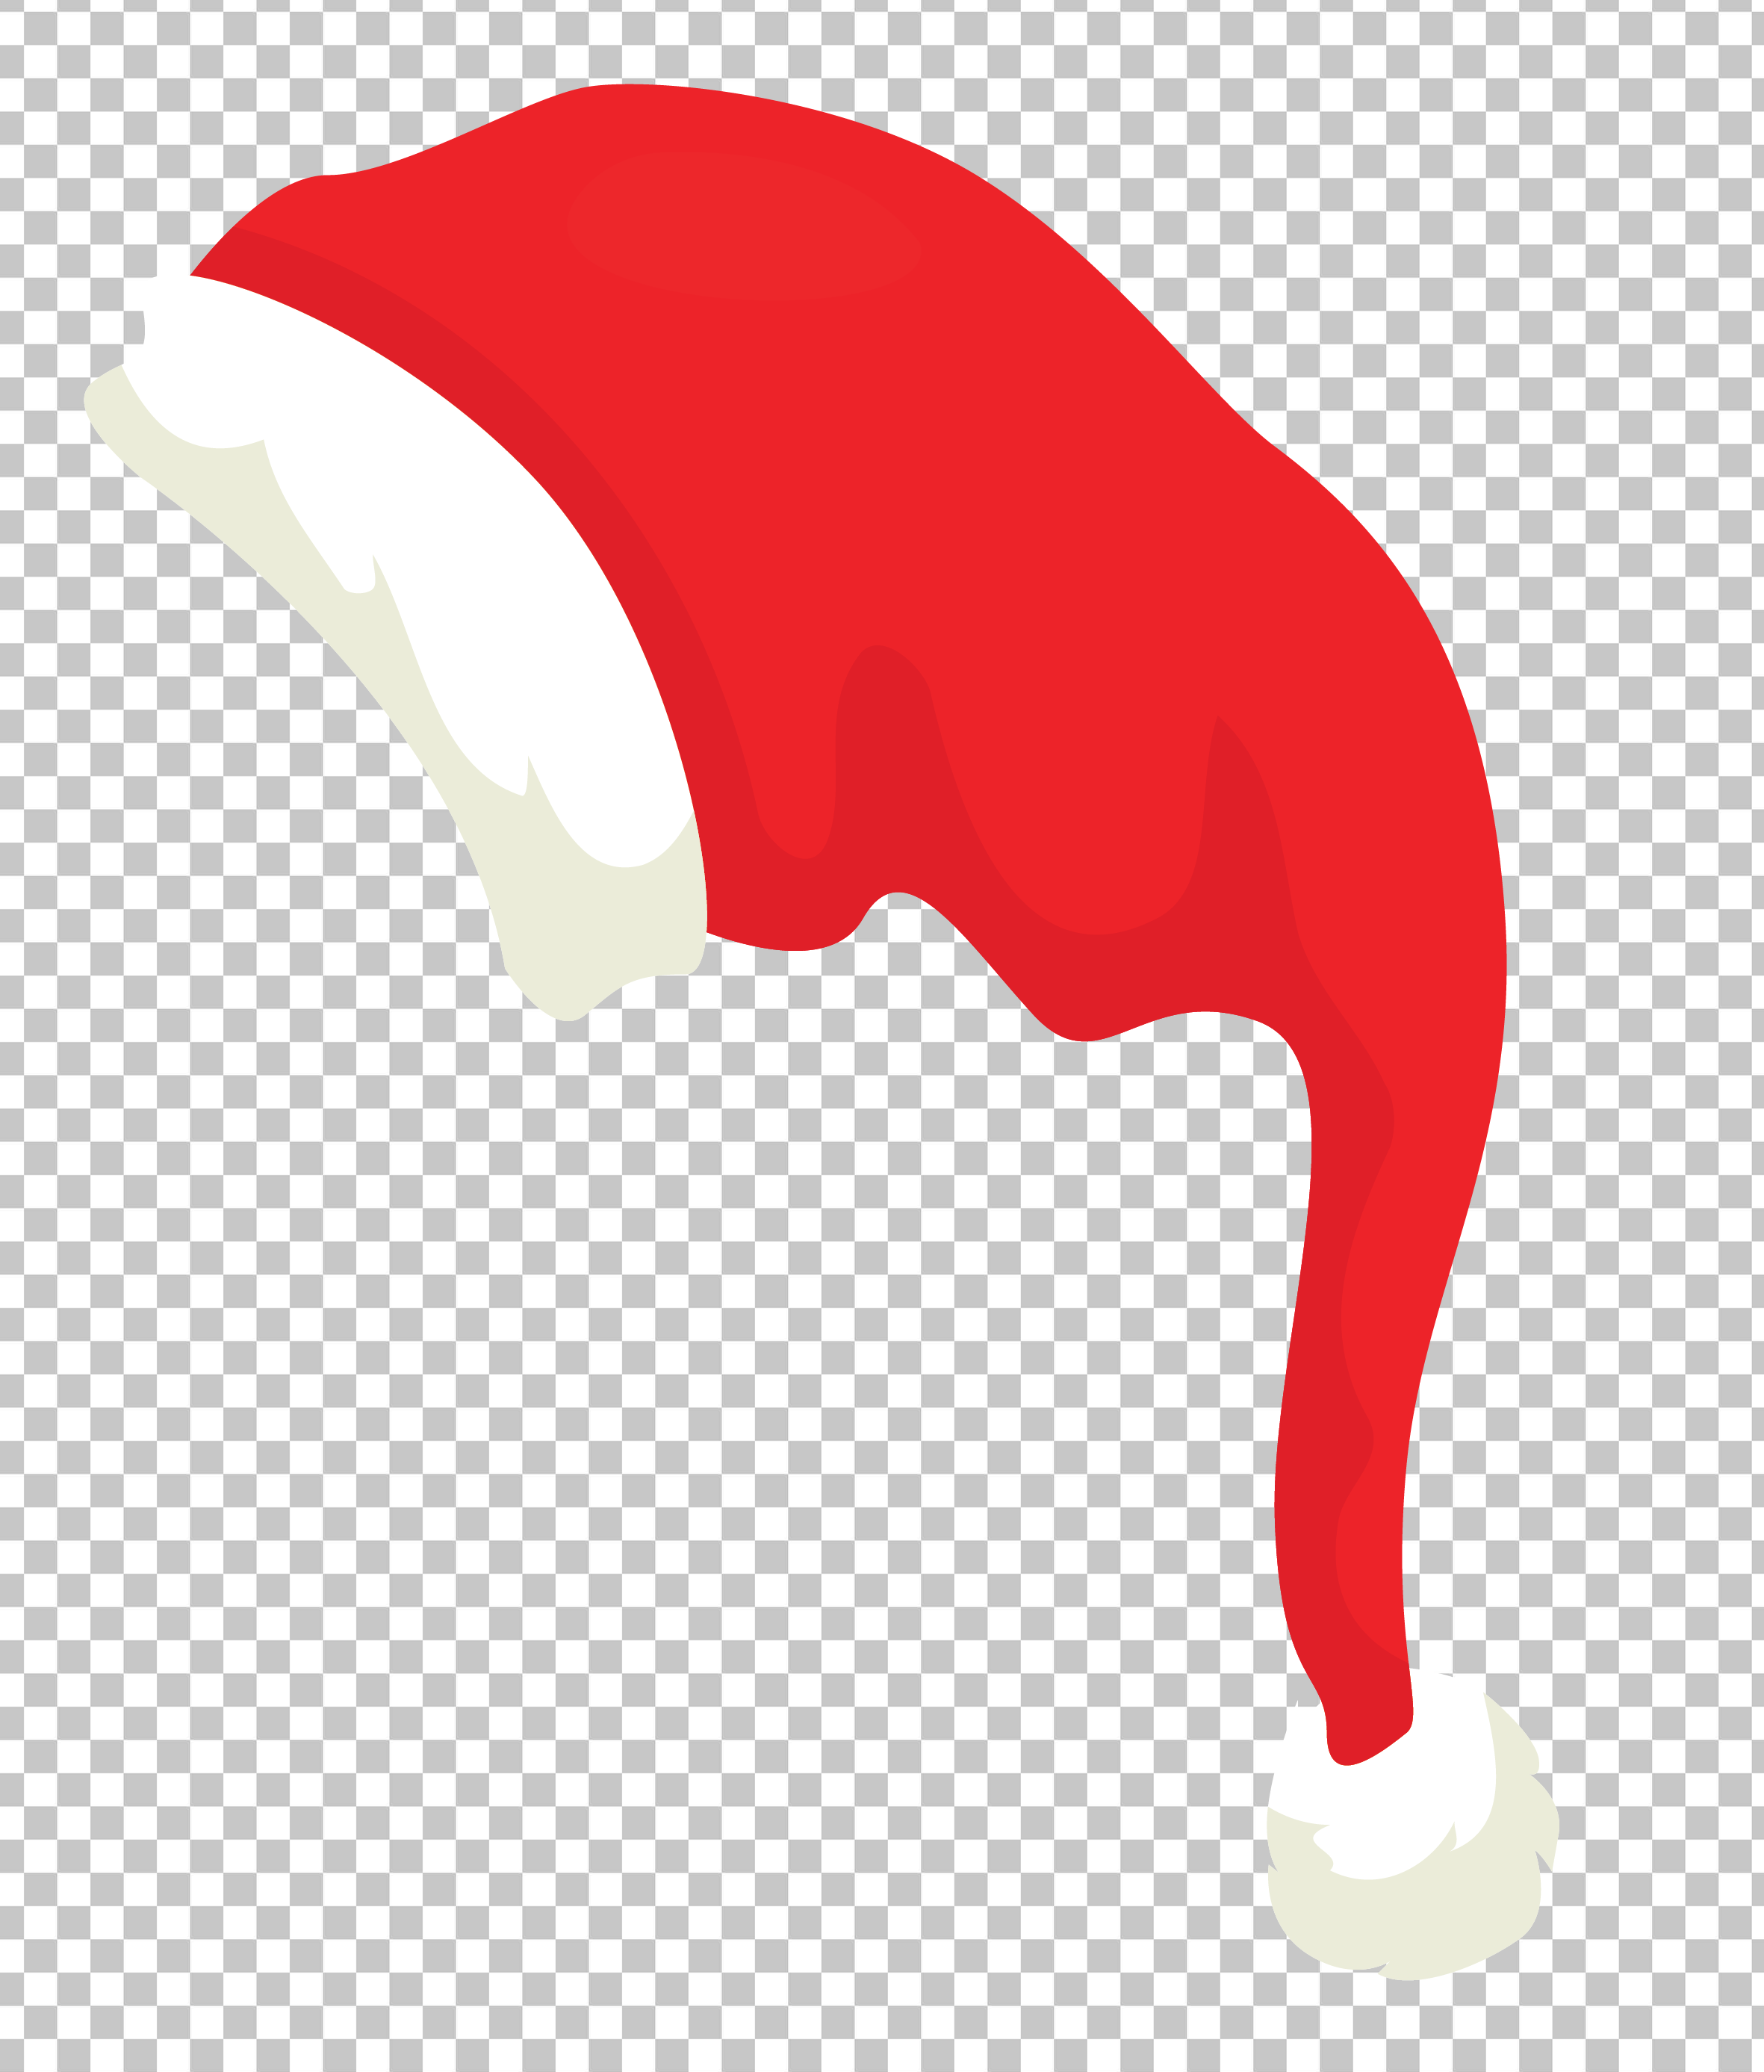 Red Santa Hat PNG Transparent Background